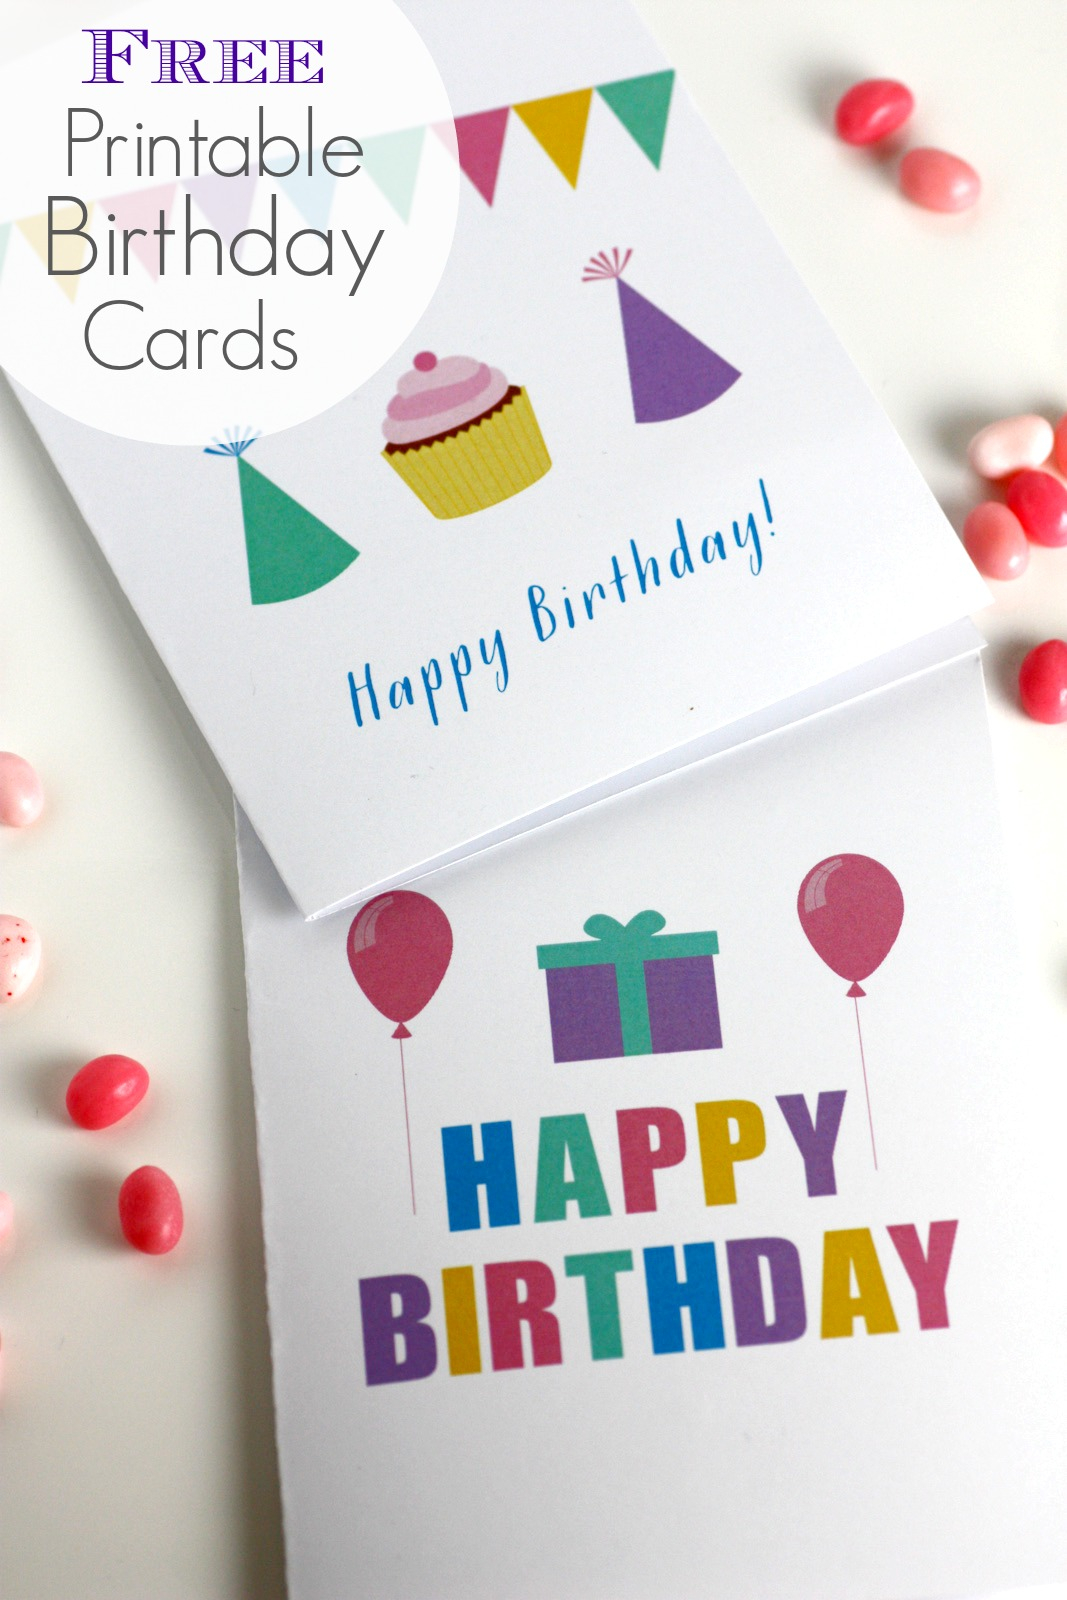 Free Printable Kids Birthday Cards